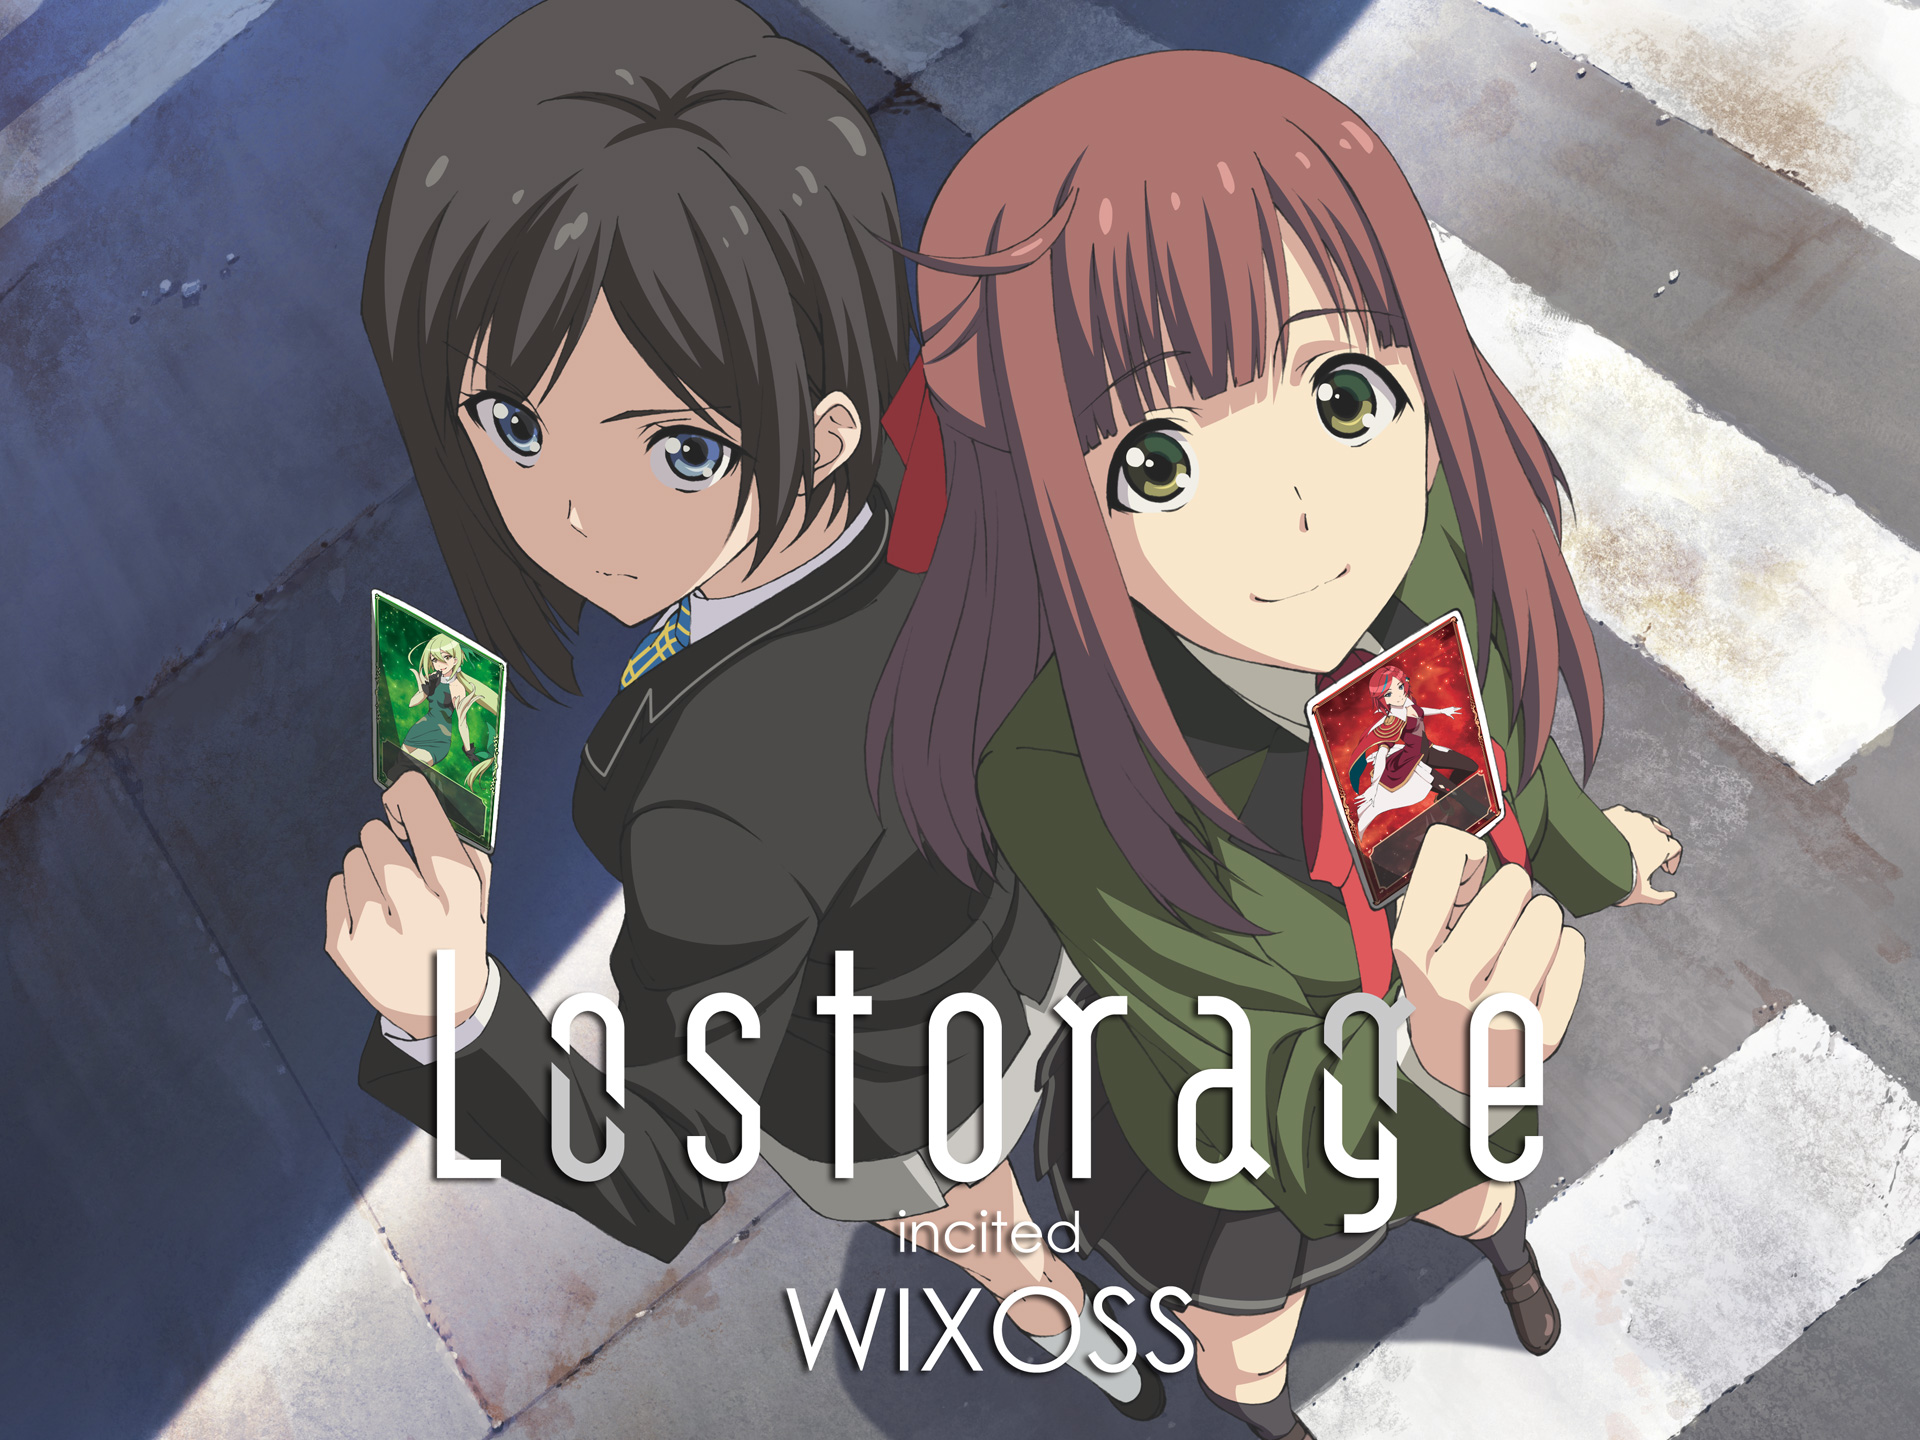 無料視聴あり アニメ Lostorage Incited Wixoss の動画まとめ 初月無料 動画配信サービスのビデオマーケット